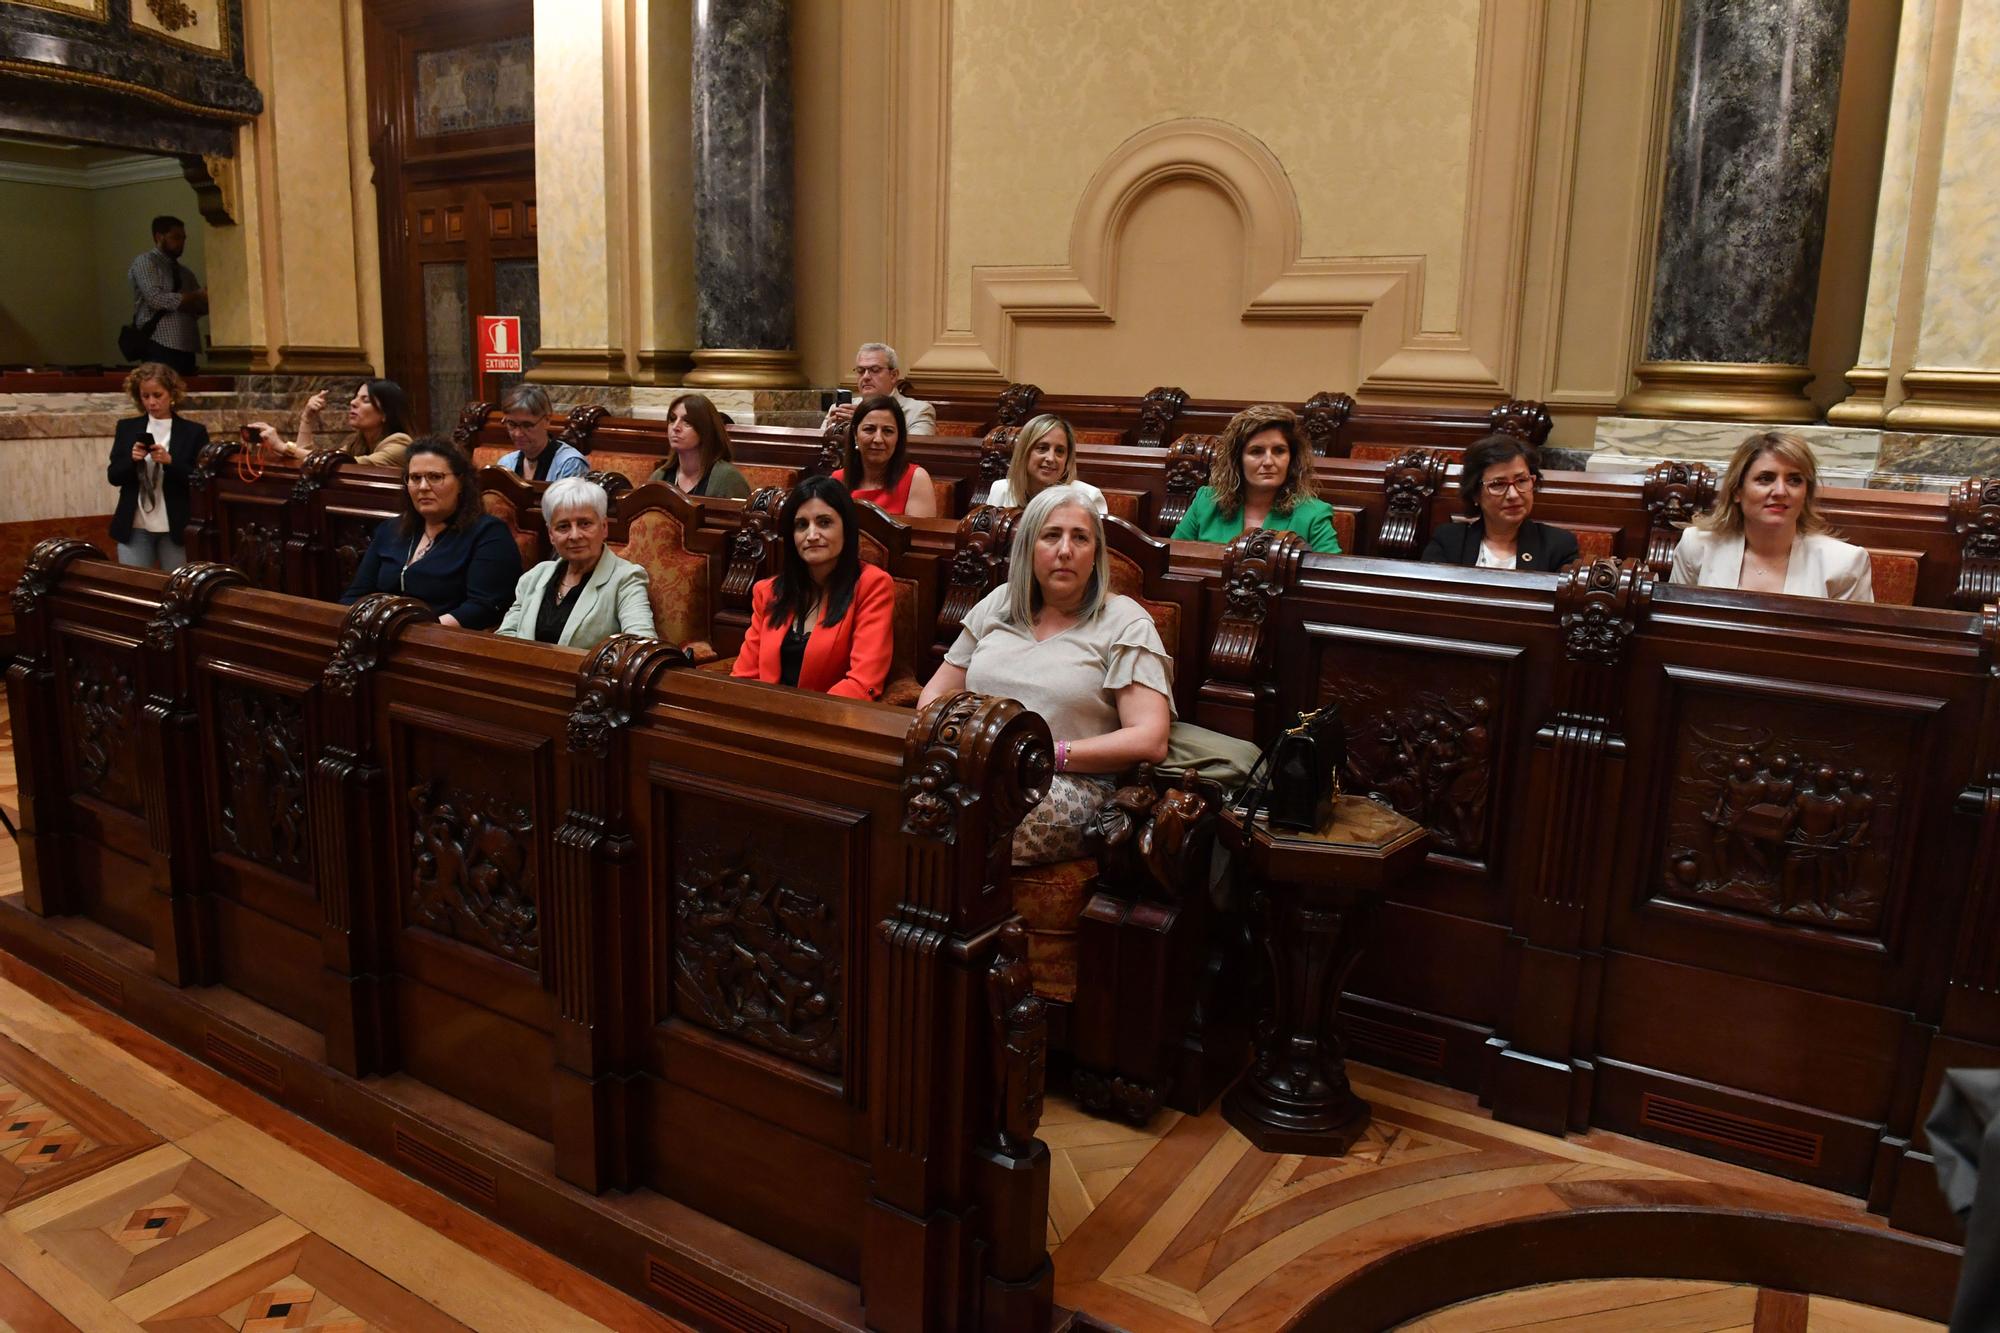 Políticas de España debaten en A Coruña sobre el papel de las mujeres en los gobiernos locales